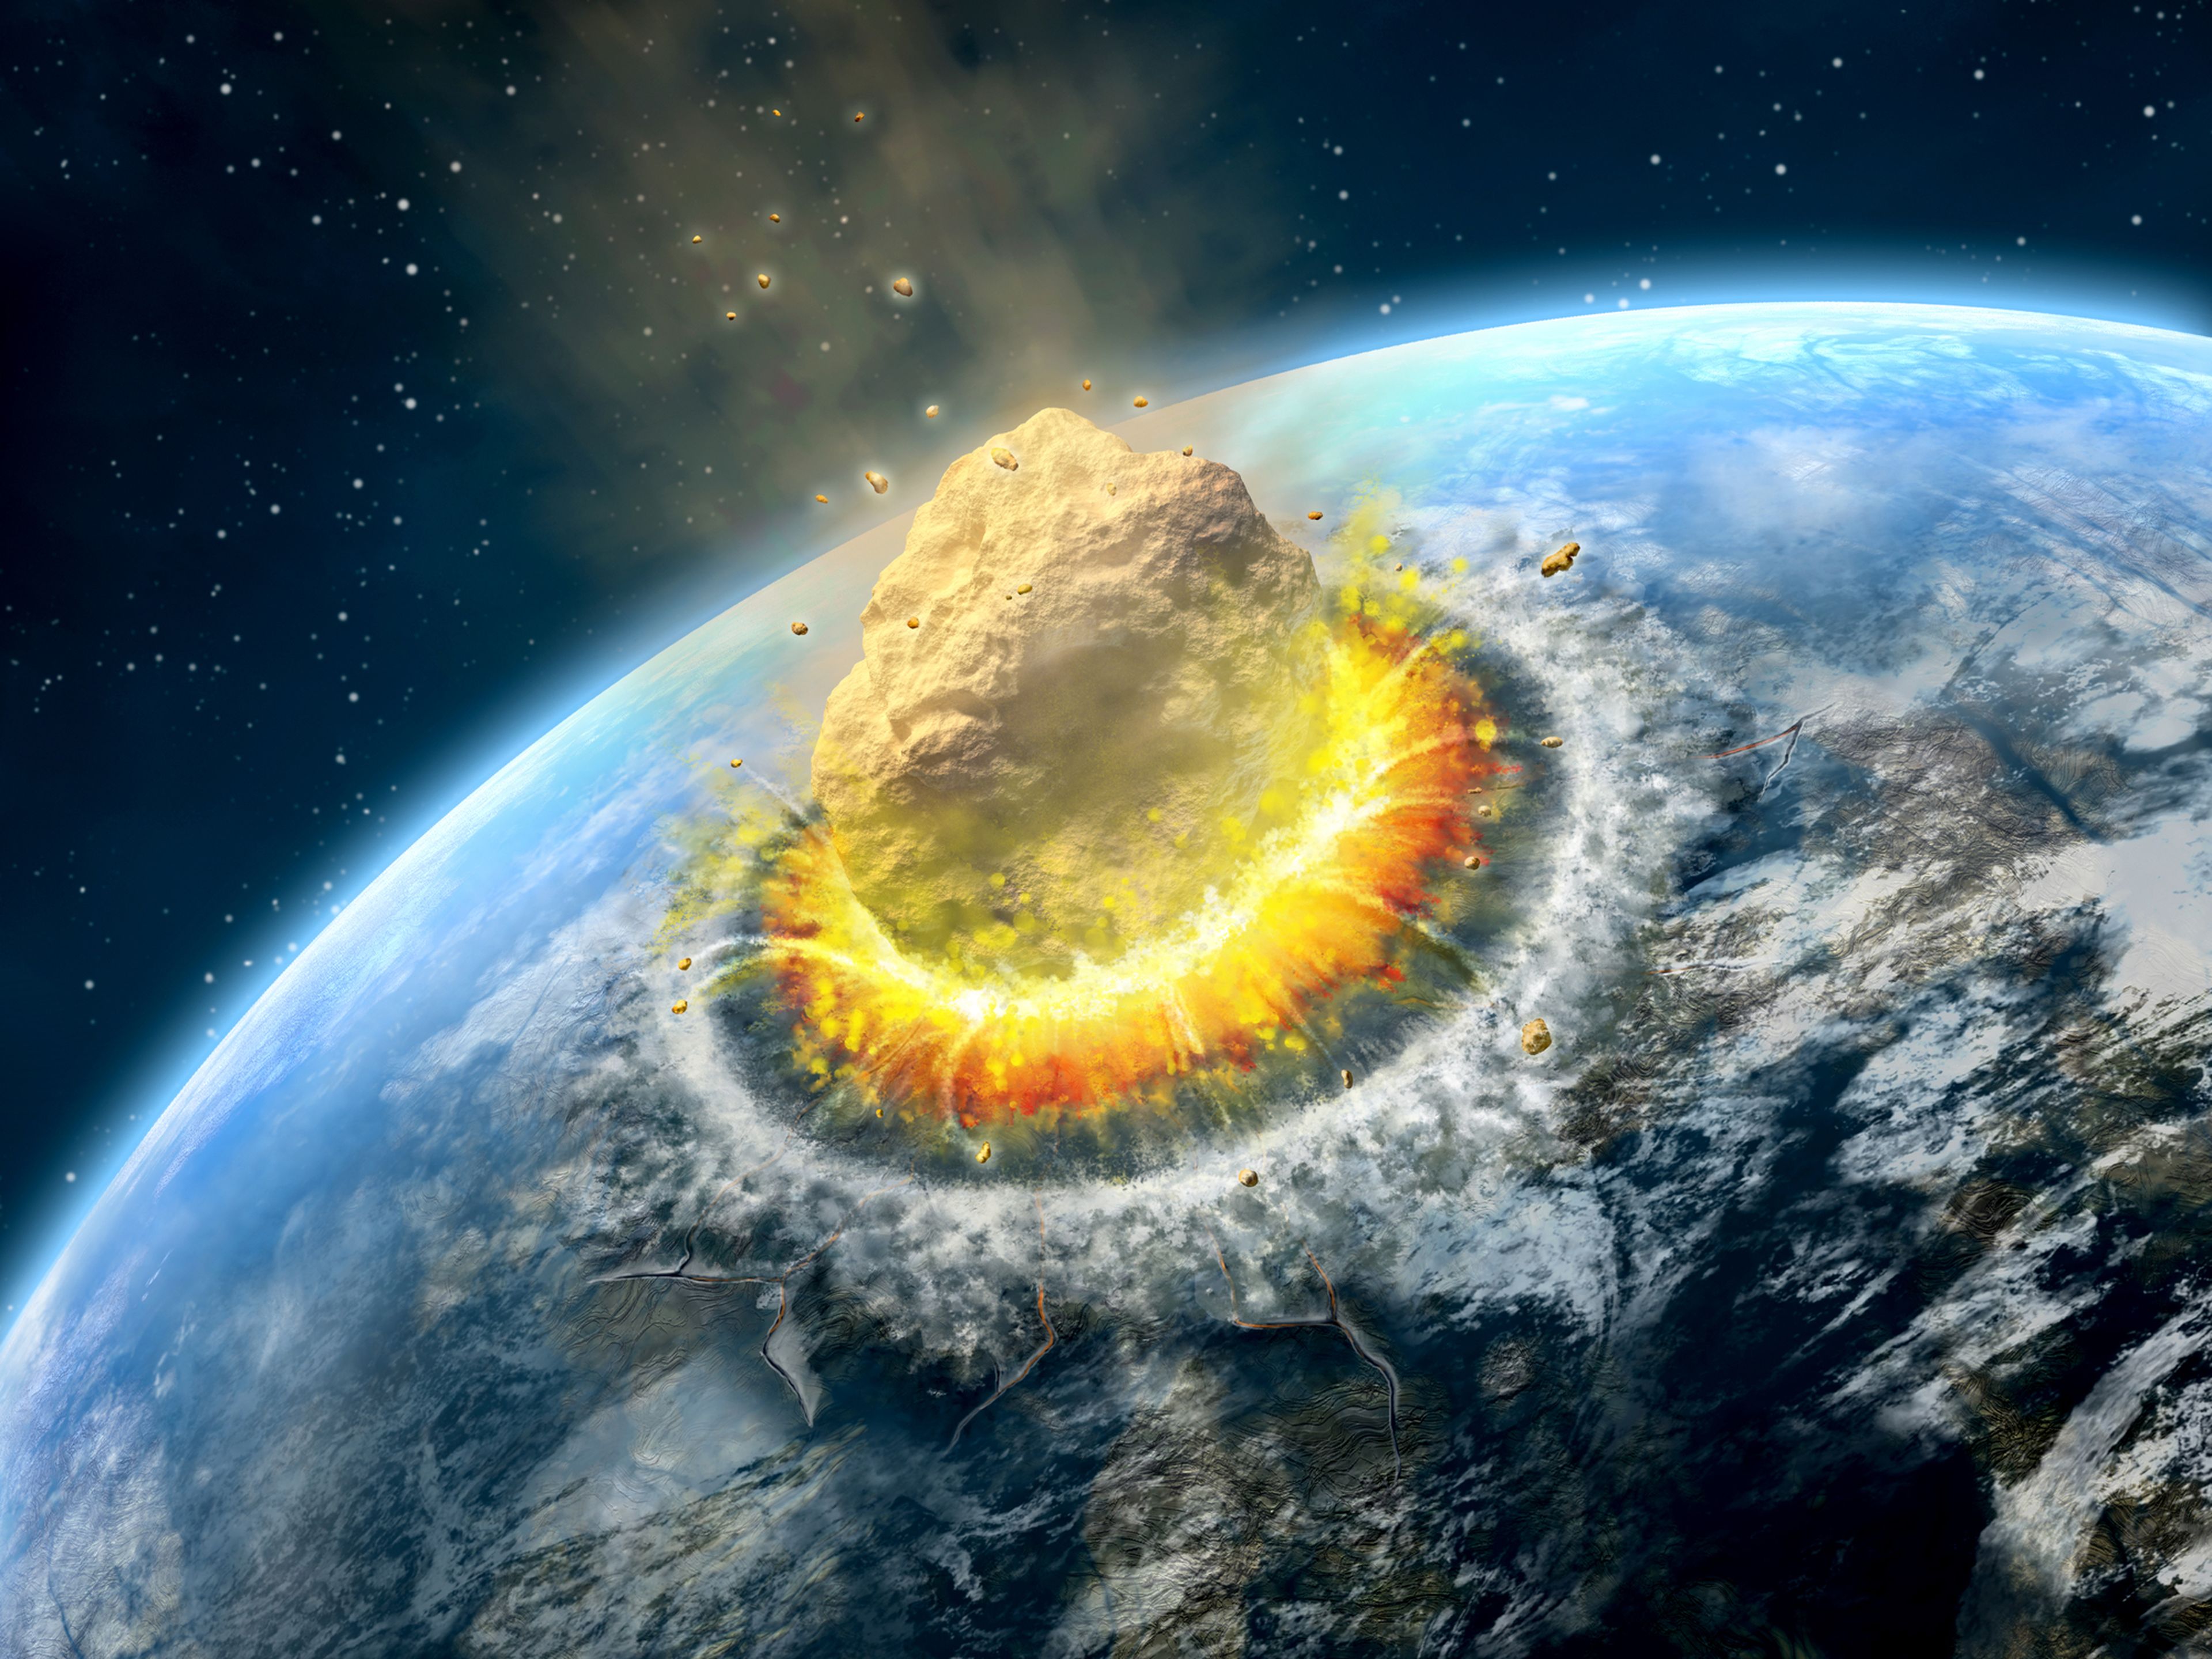 asteroide impacta en la Tierra